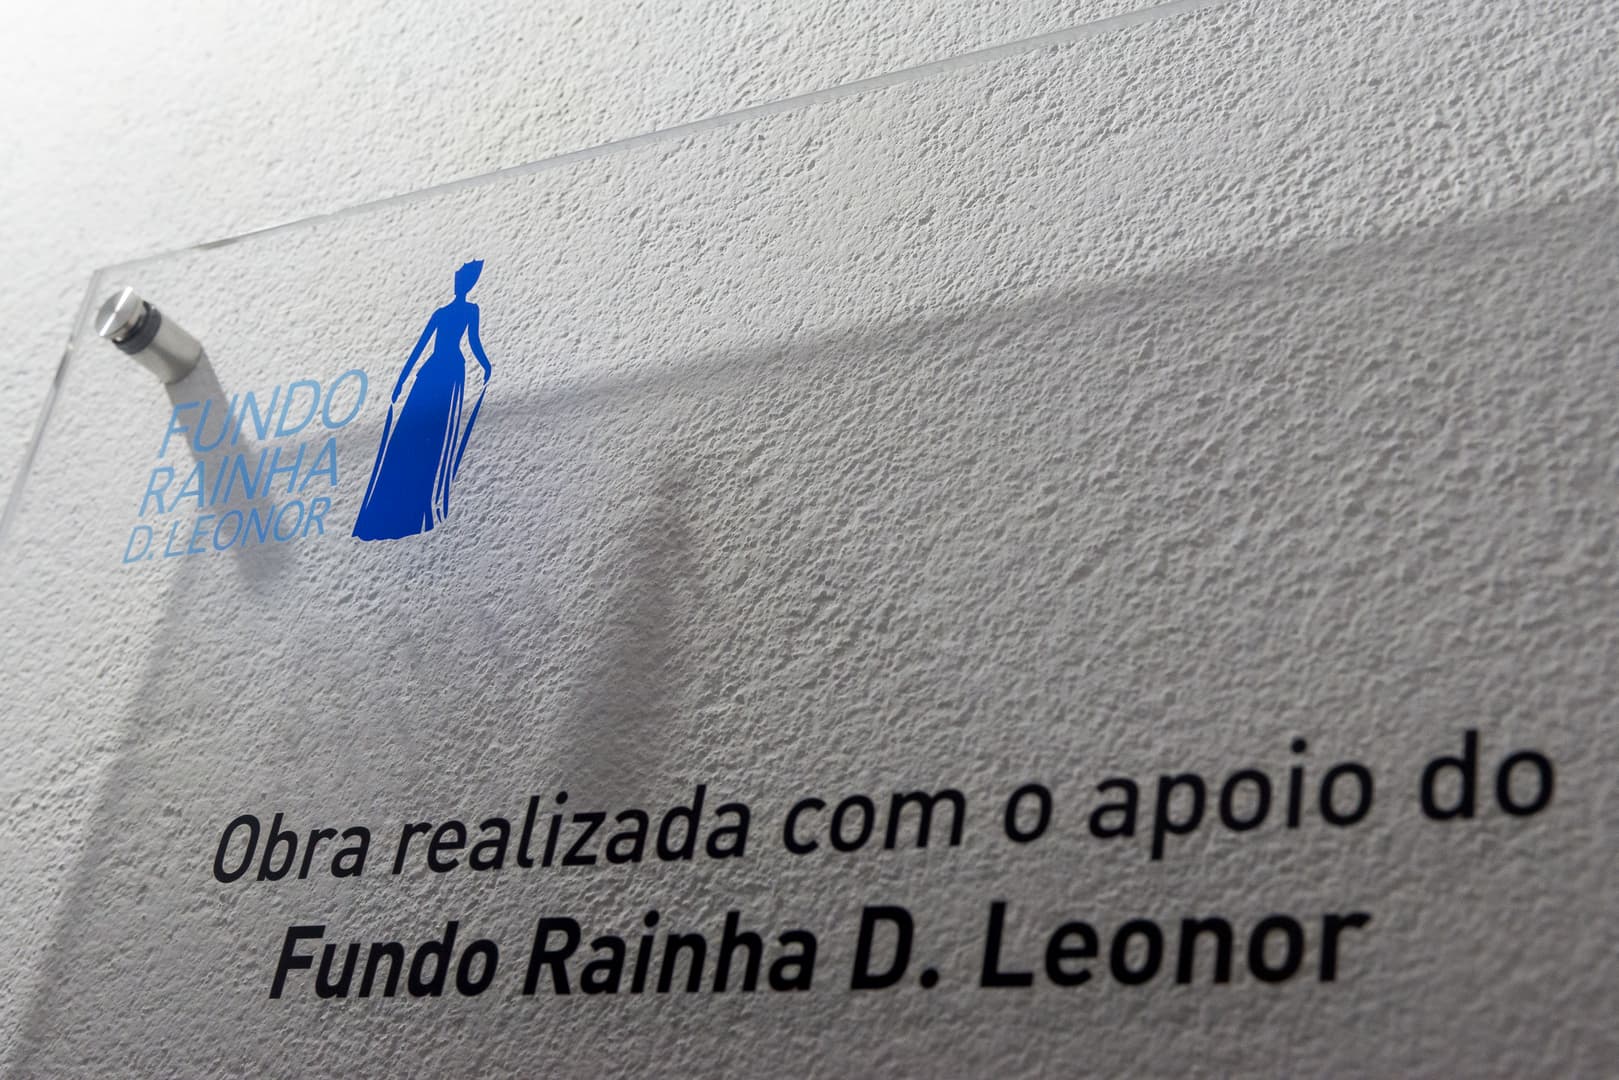 Fundo Rainha D. Leonor apoia projeto inovador da Misericórdia de São João da Madeira